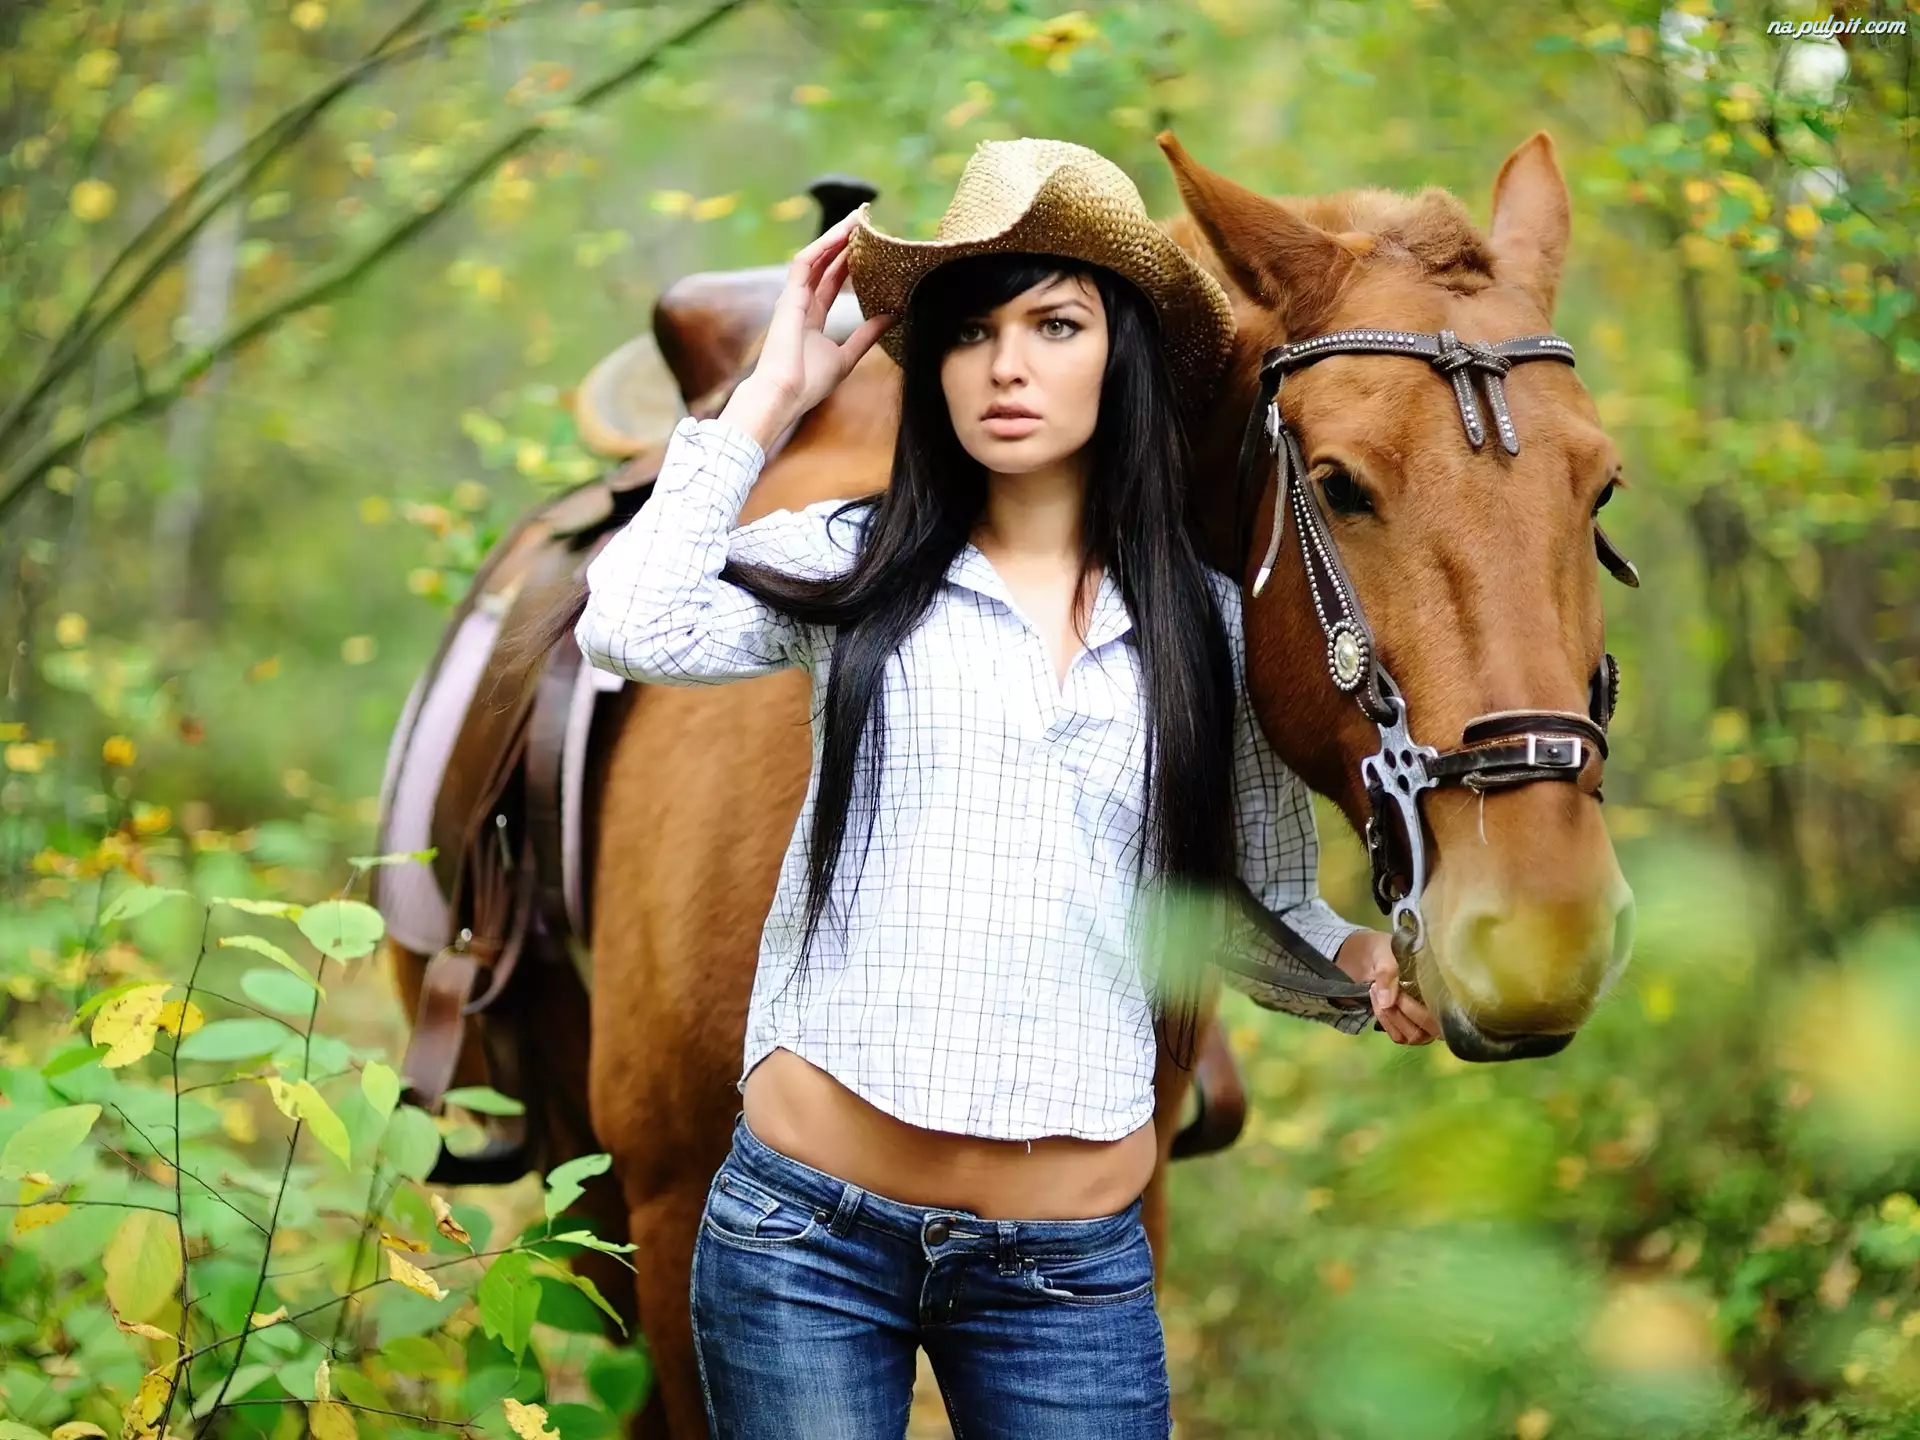 Негритянку конем. Девушка с лошадью. Девушка на коне. Девочка на лошади. Конные прогулки и красивые девушки.